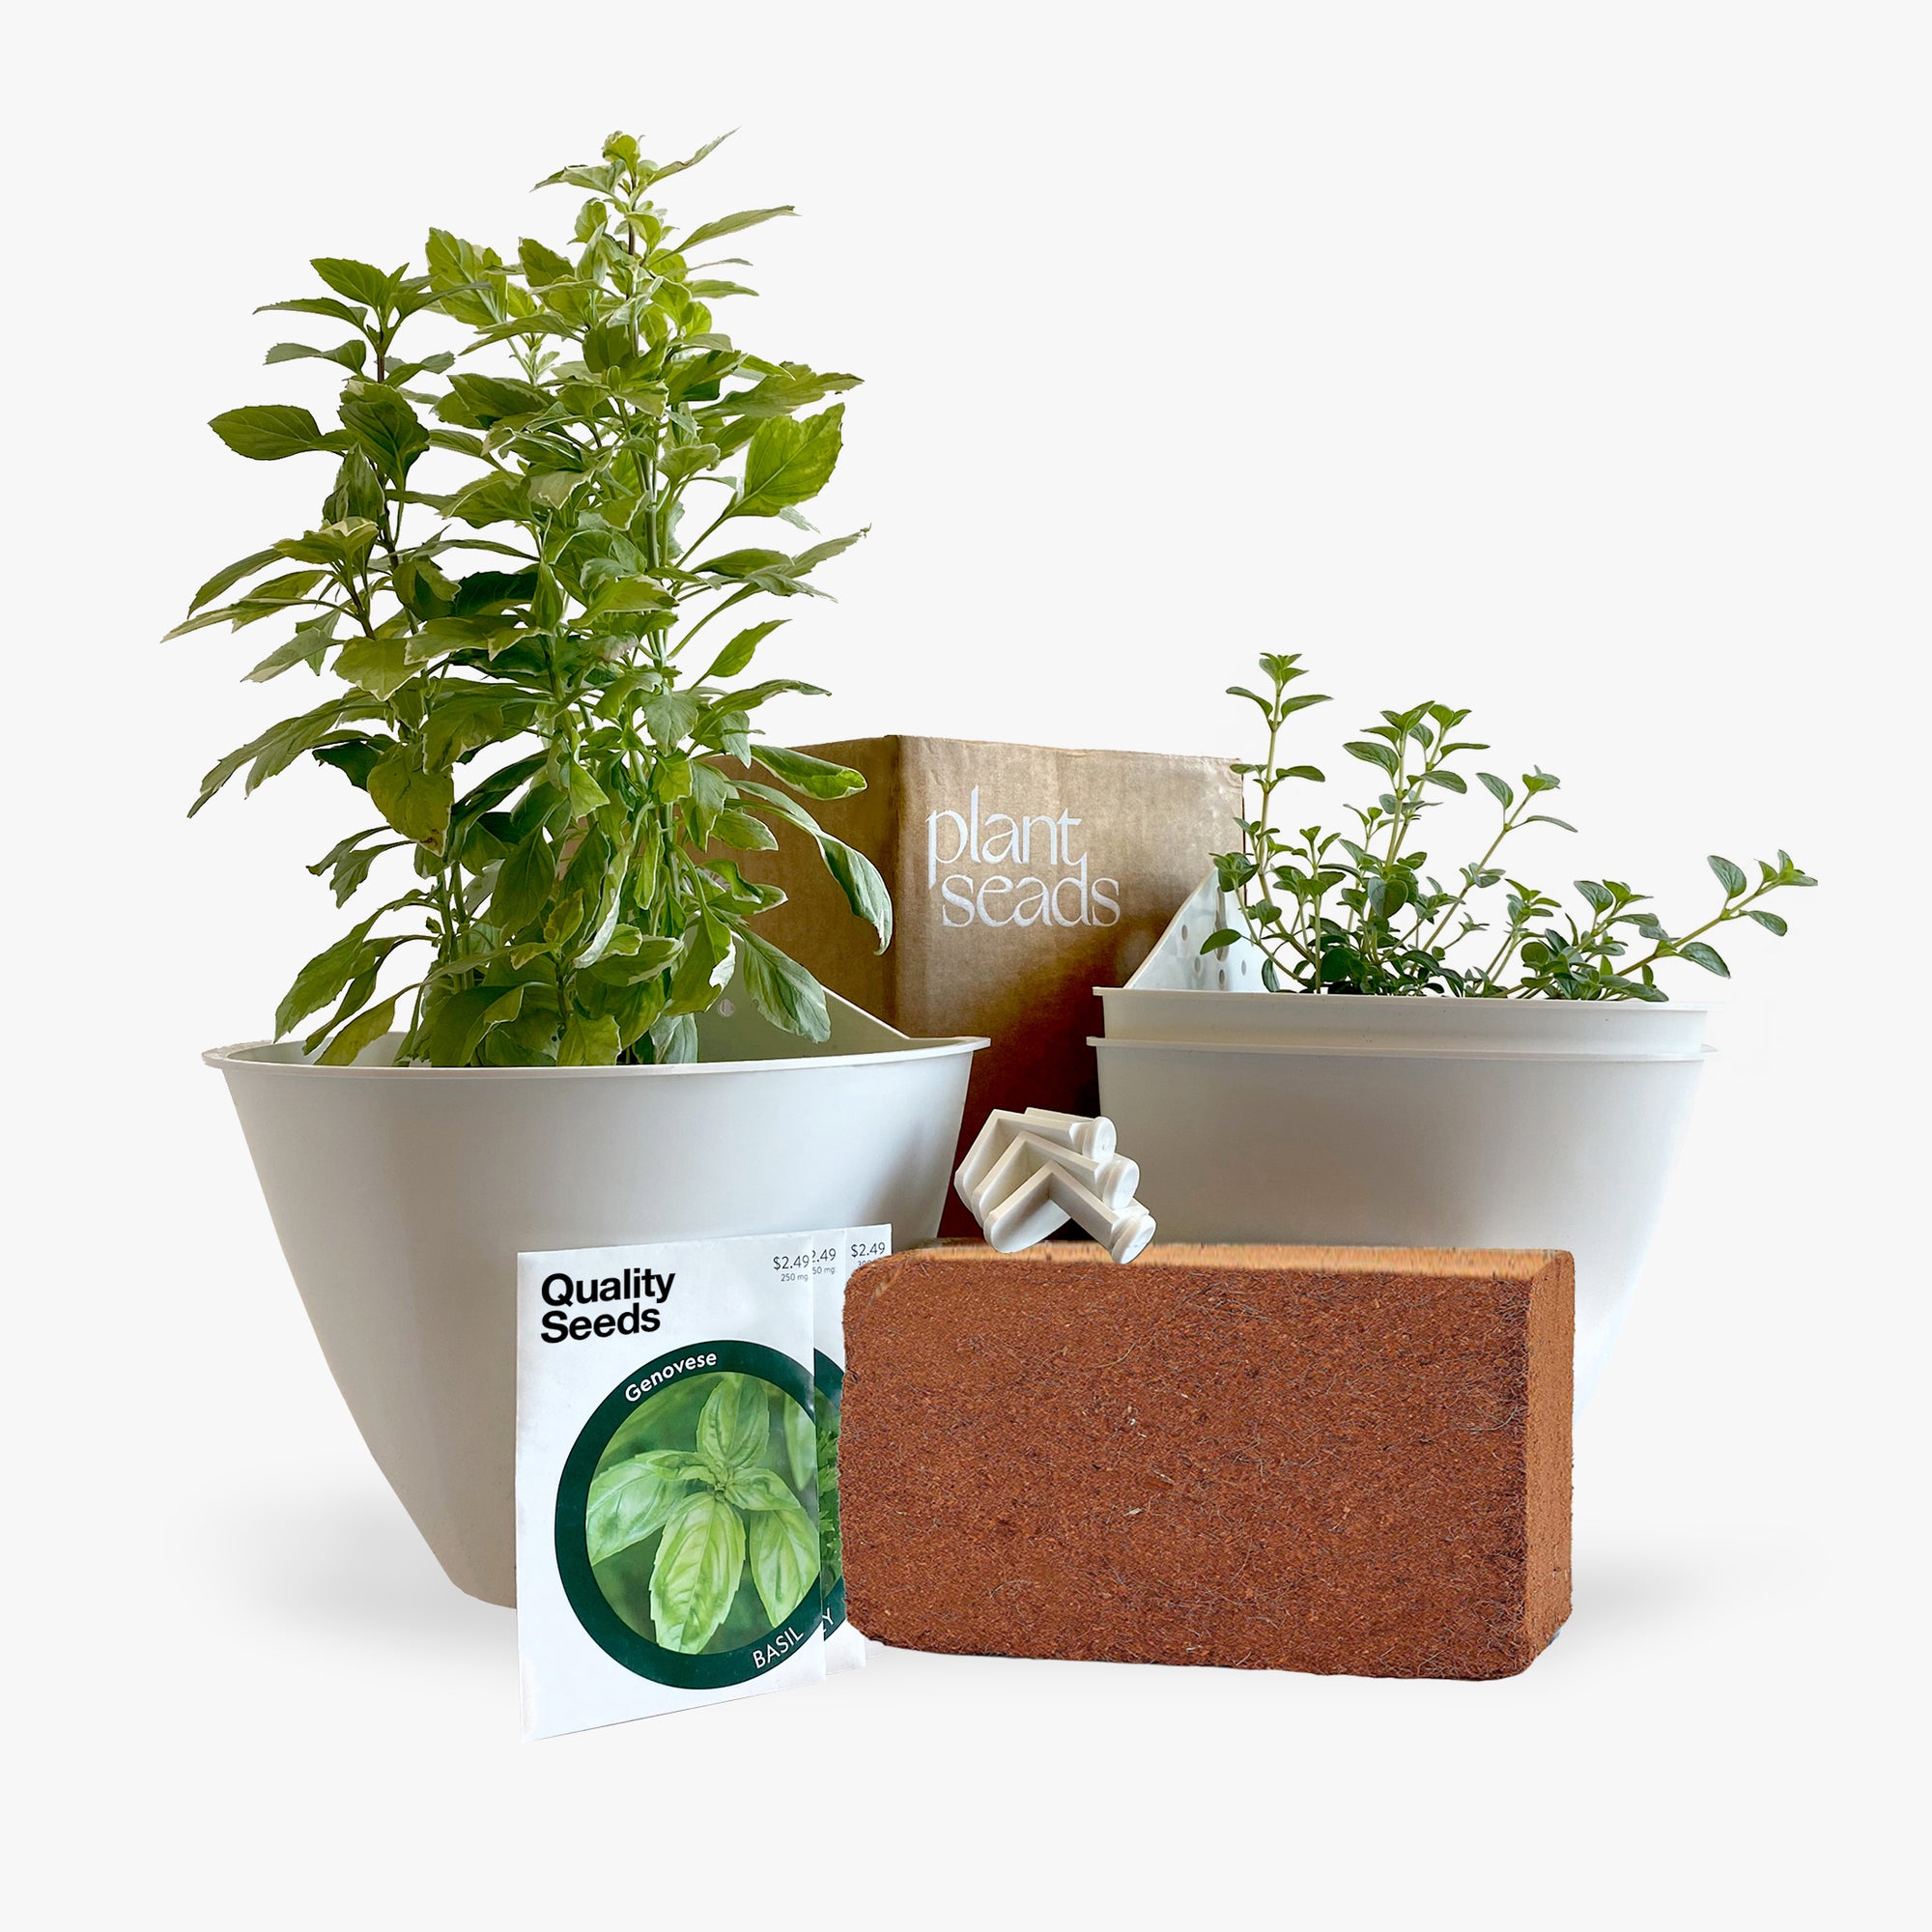 Herb Garden in a Box